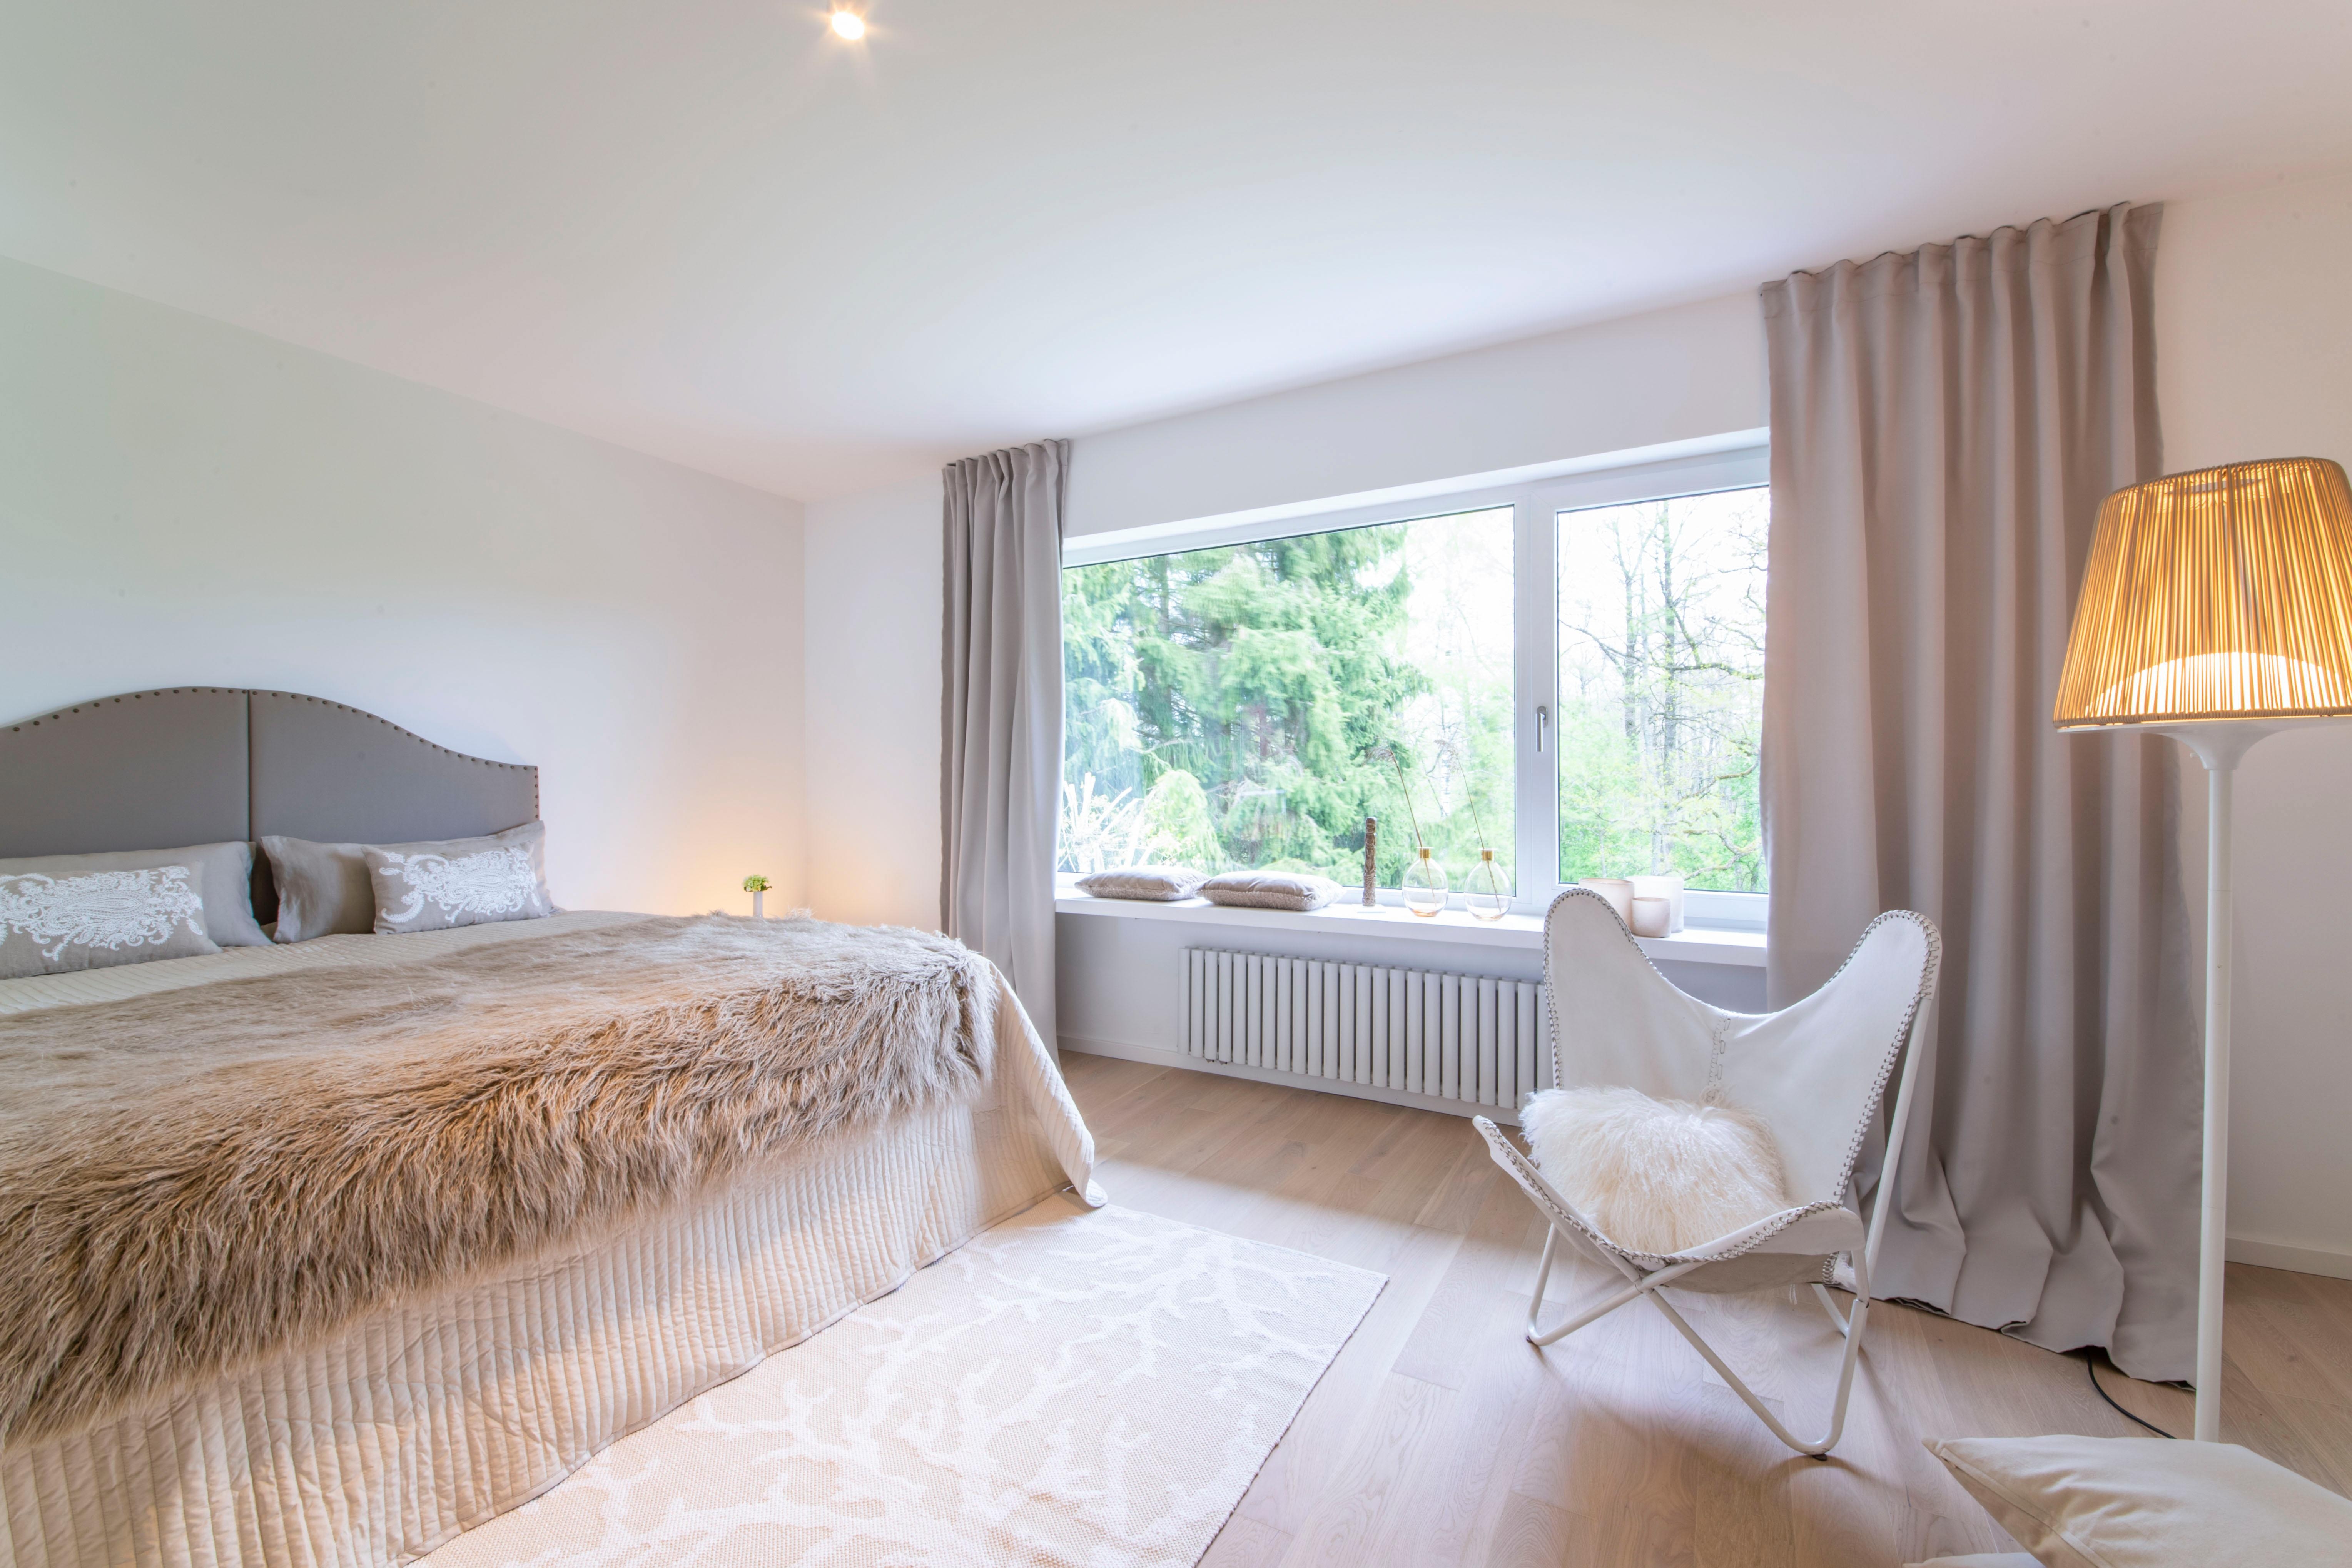 Schlafzimmer mit Blick ins GRÜNE - Beigetöne zum "Einschlafen" - home staging Projekt